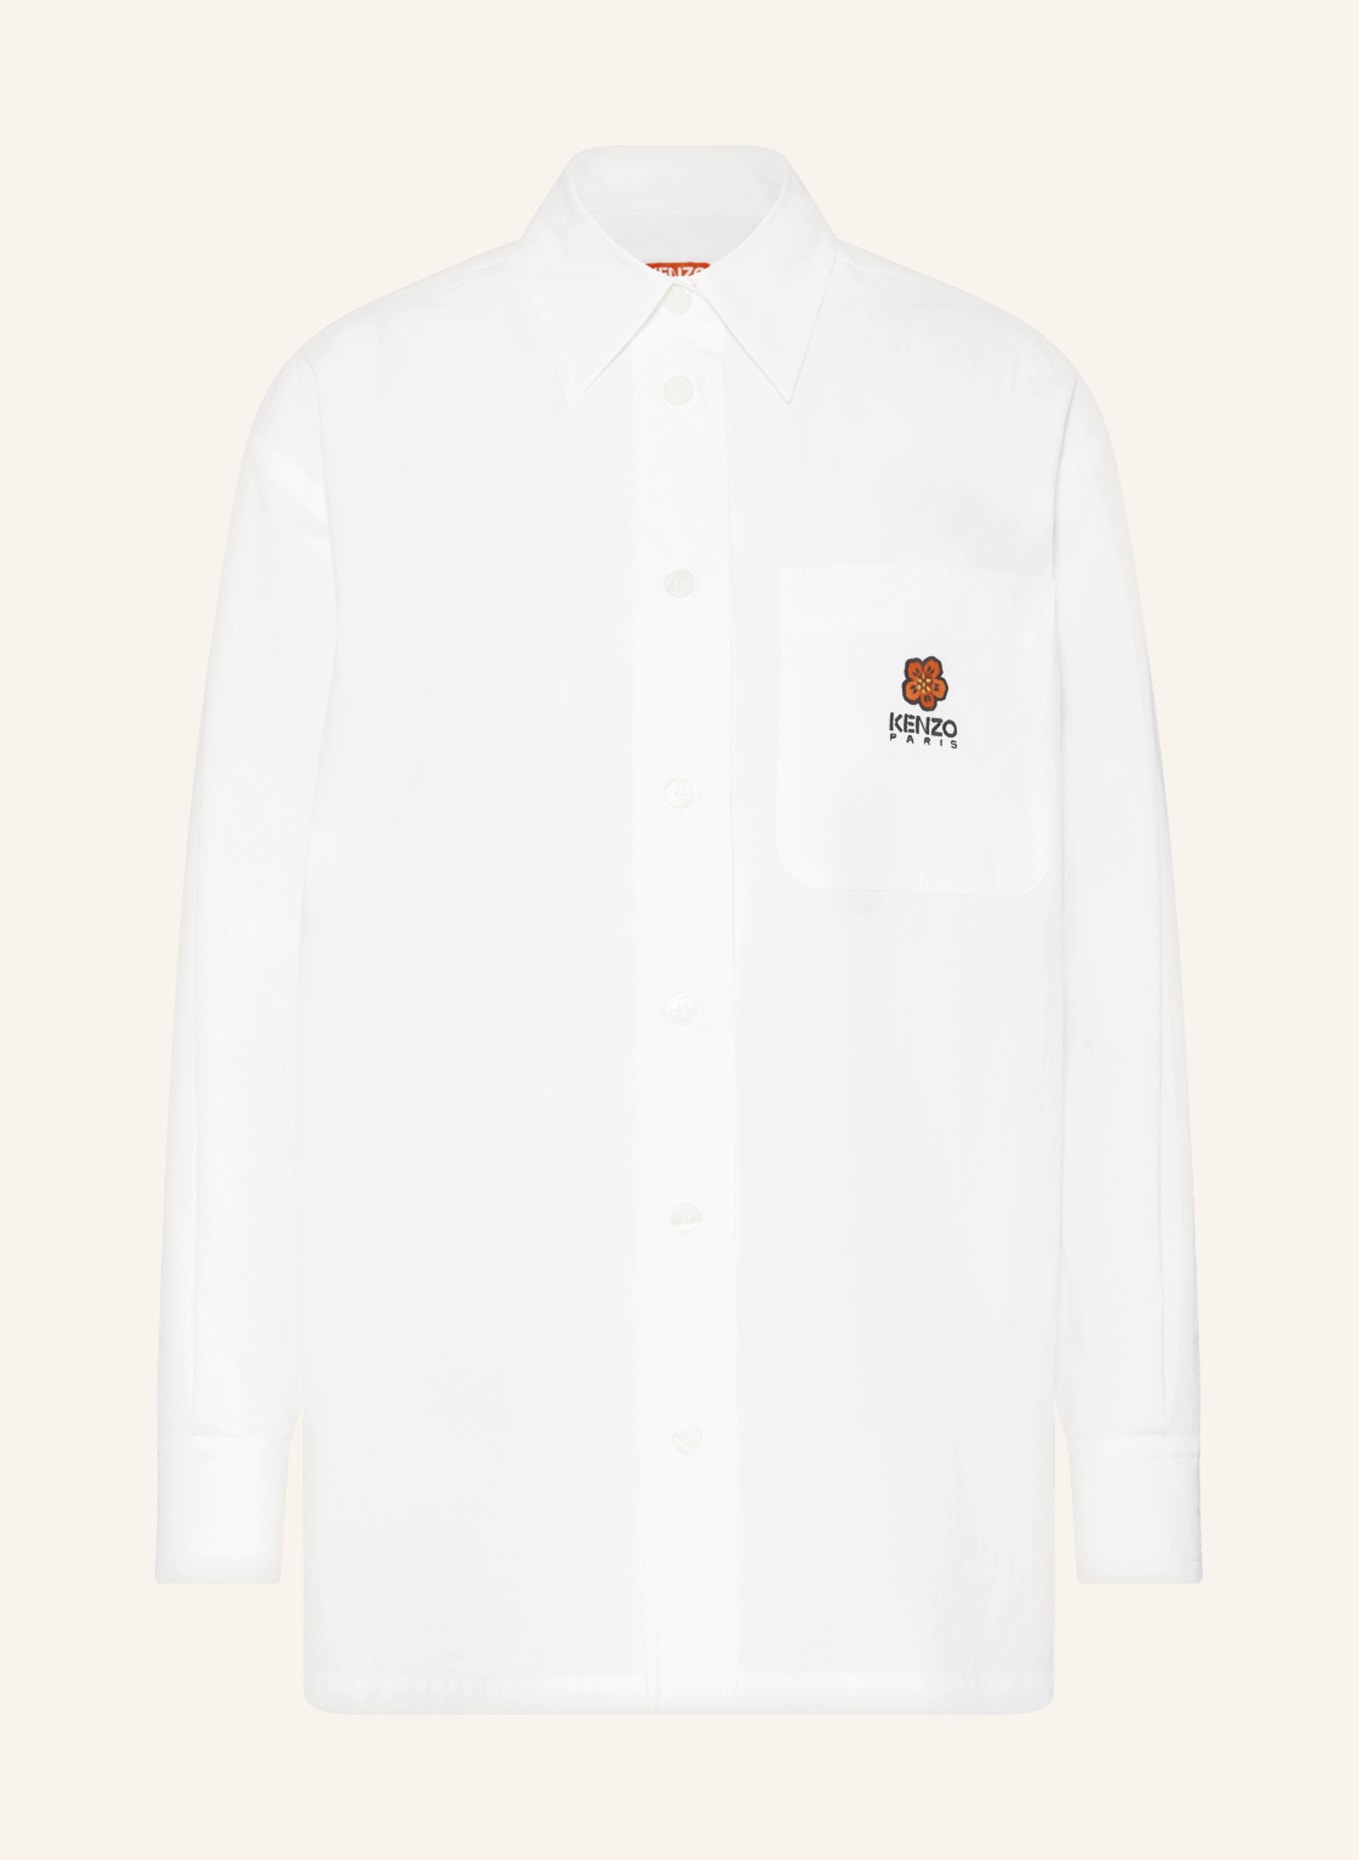 KENZO Oversized shirt blouse, Color: WHITE (Image 1)